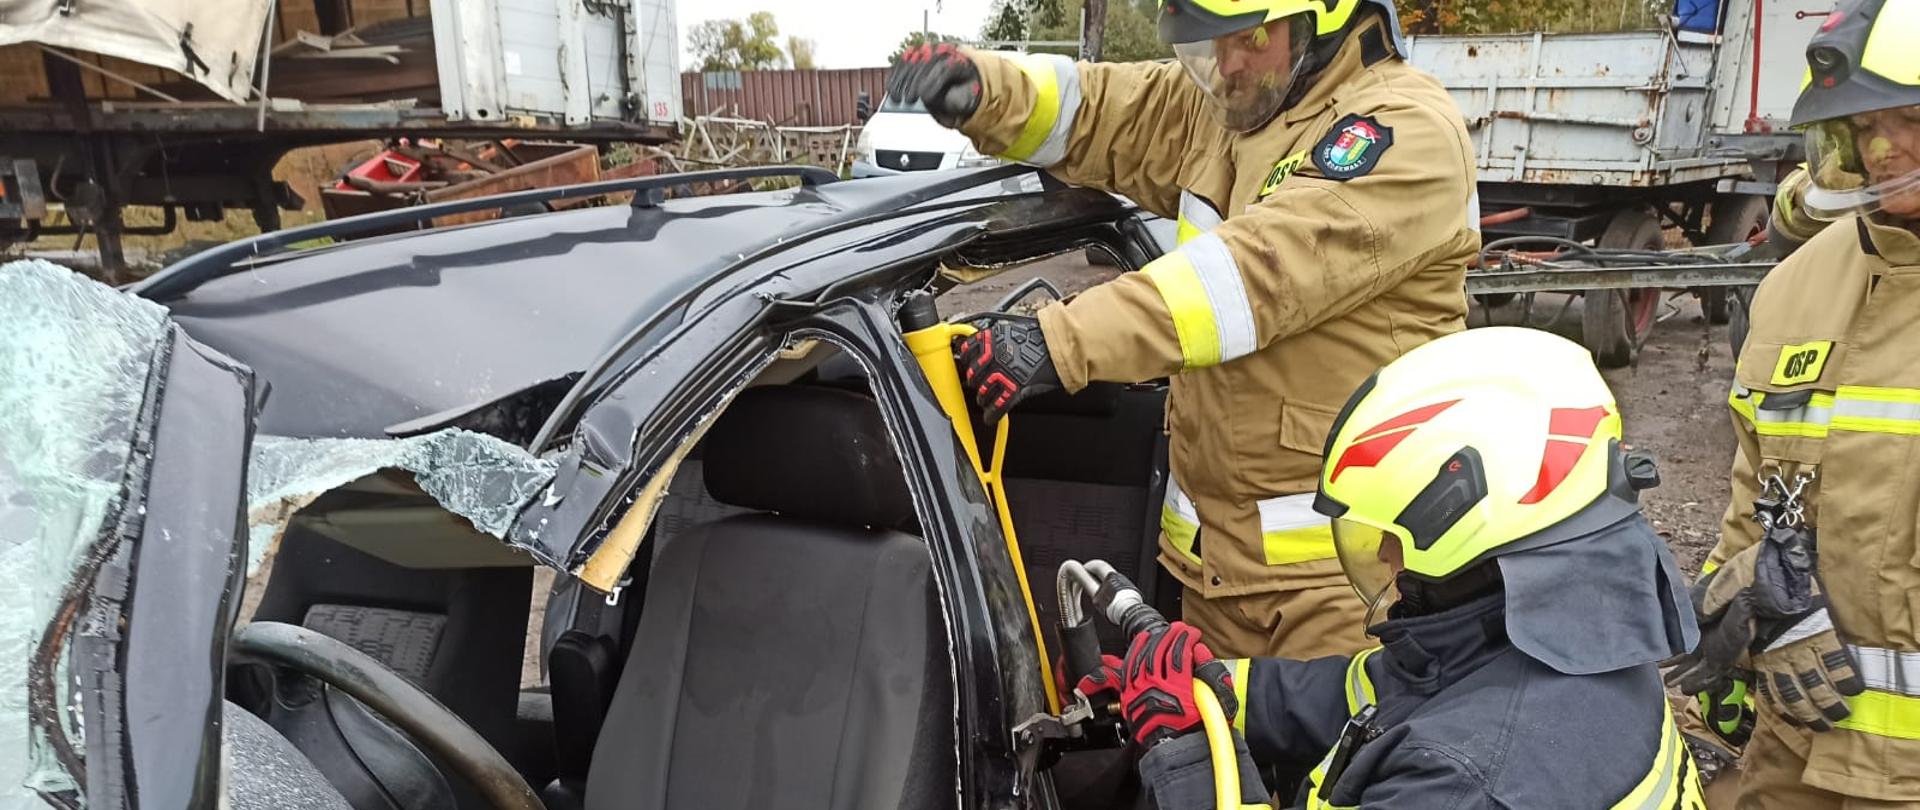 Zdjęcie przedstawia strażaka podczas rozpierania konstrukcji samochodu z użyciem narzędzi hydraulicznych.